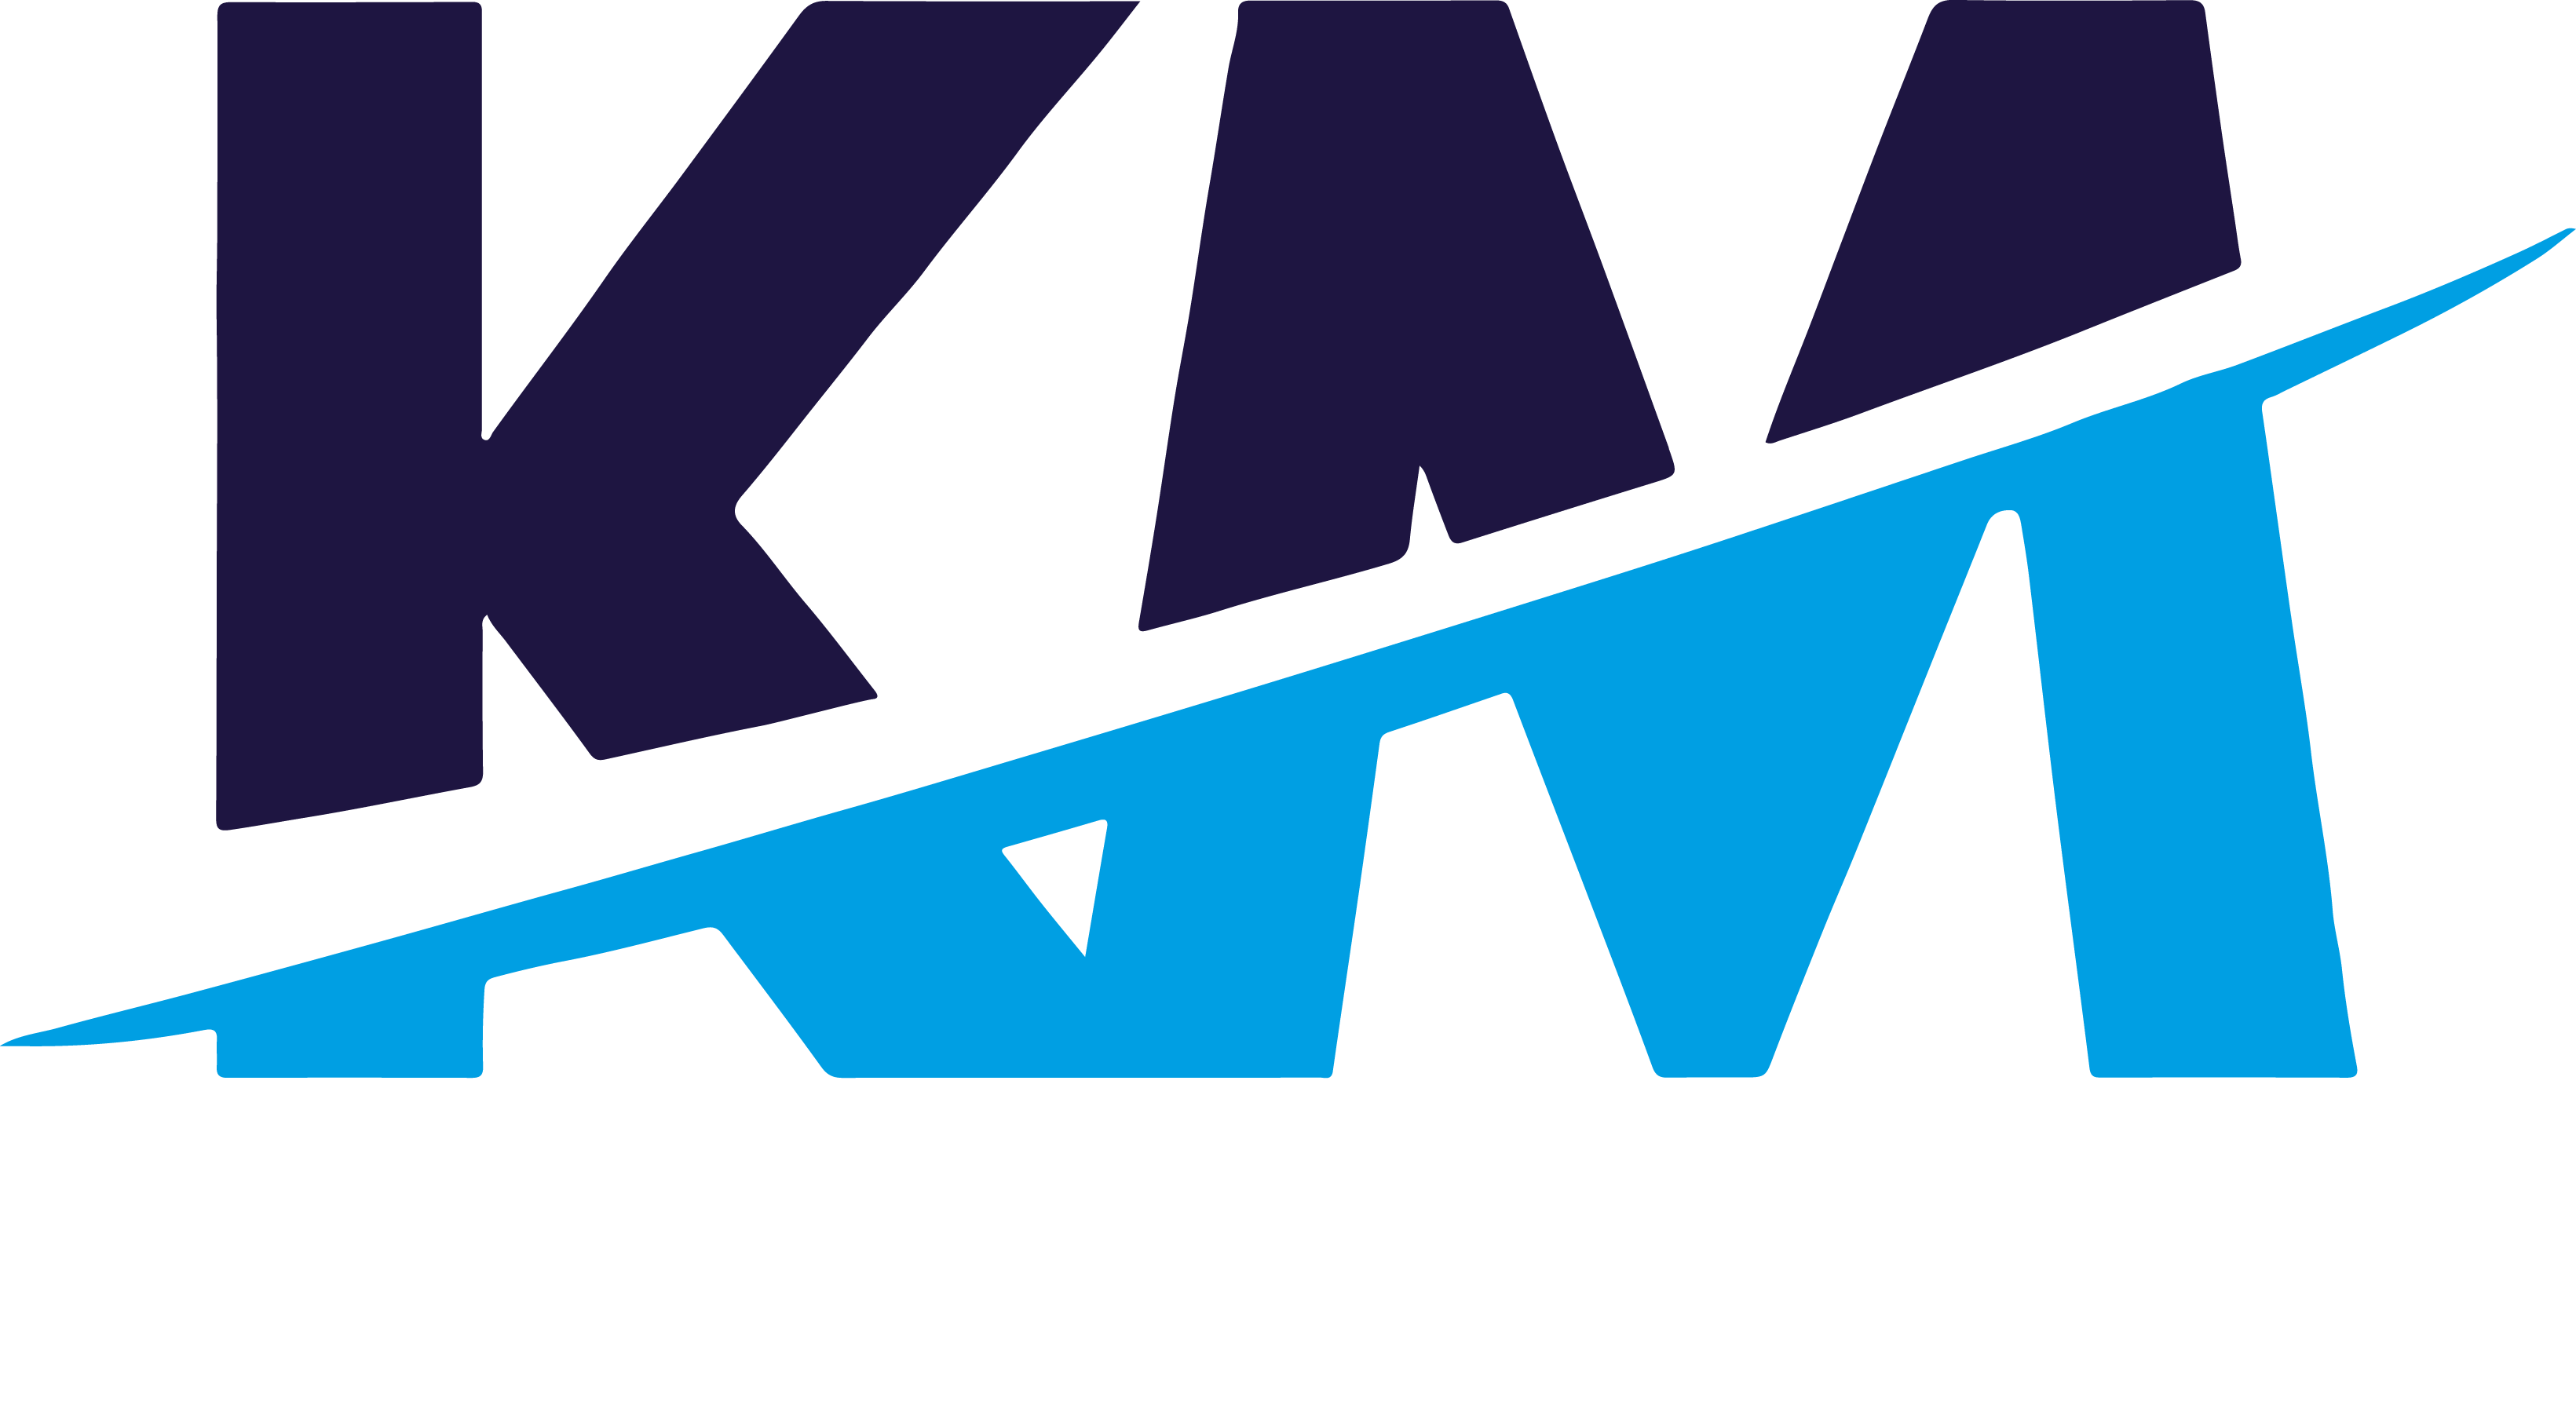 Km логотип. Км профиль логотип. Картинка km. Km лого Design. Профиль км эксперт